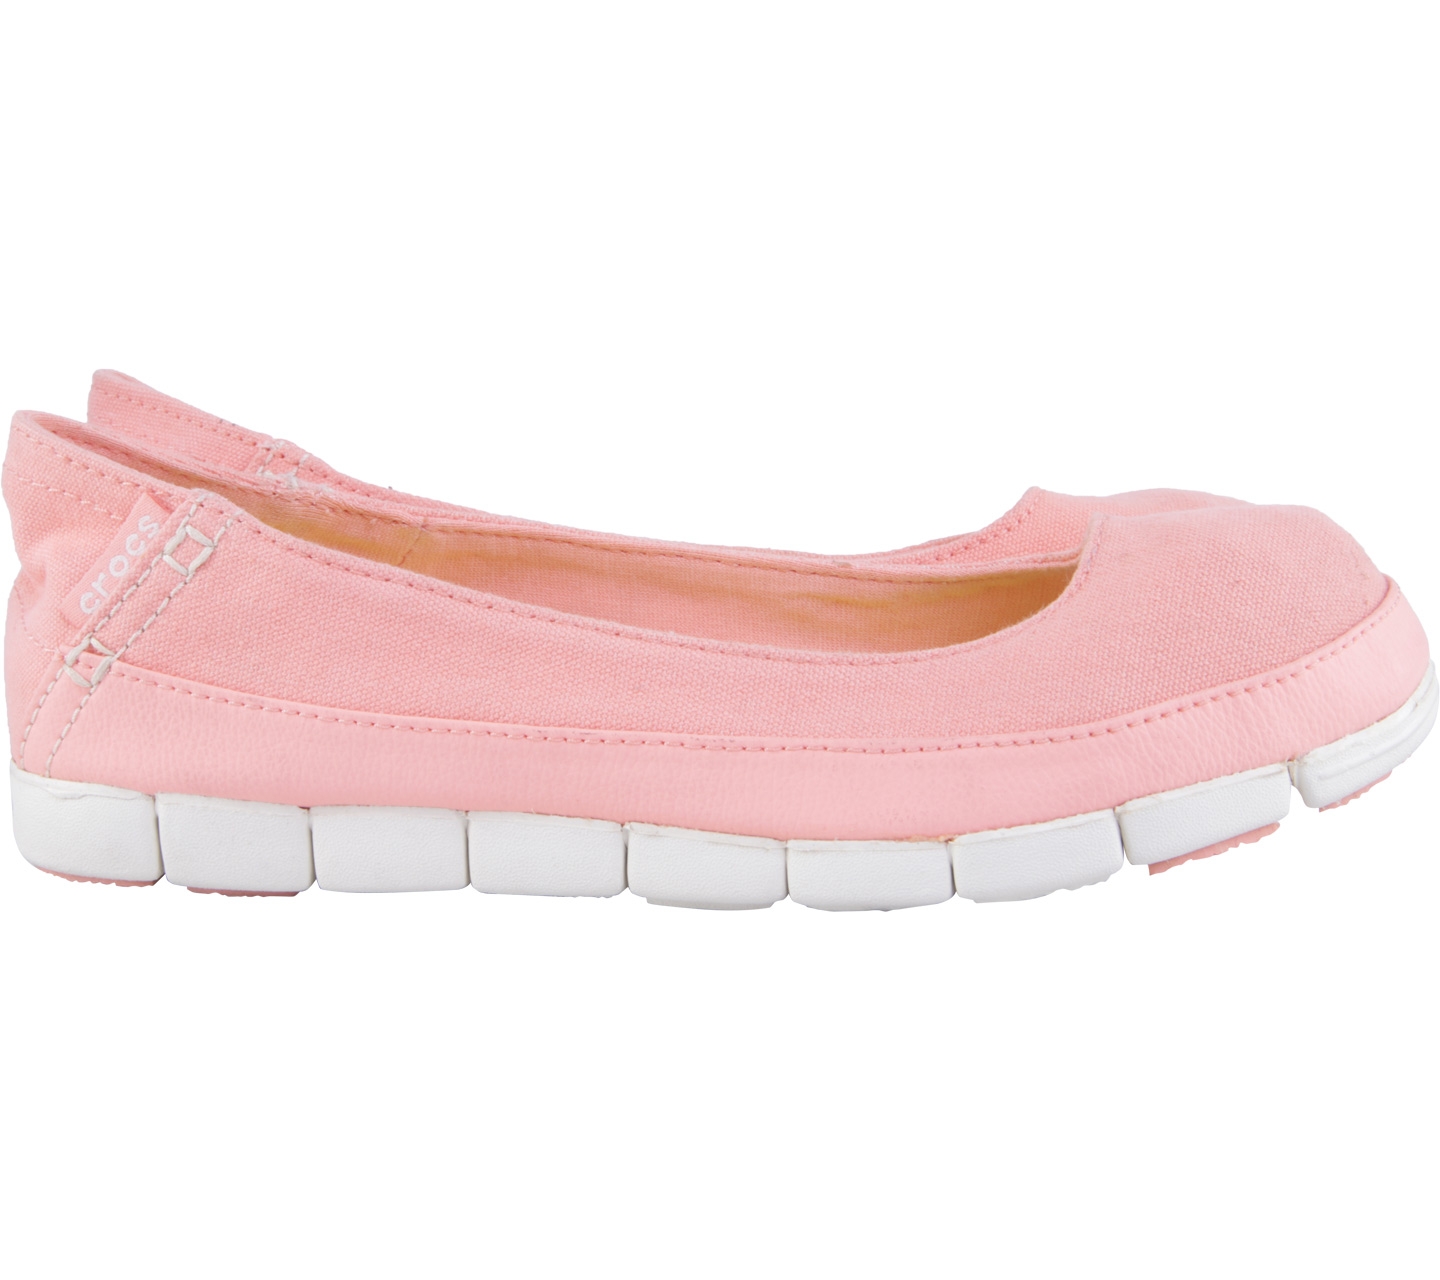 Crocs Pink Flats